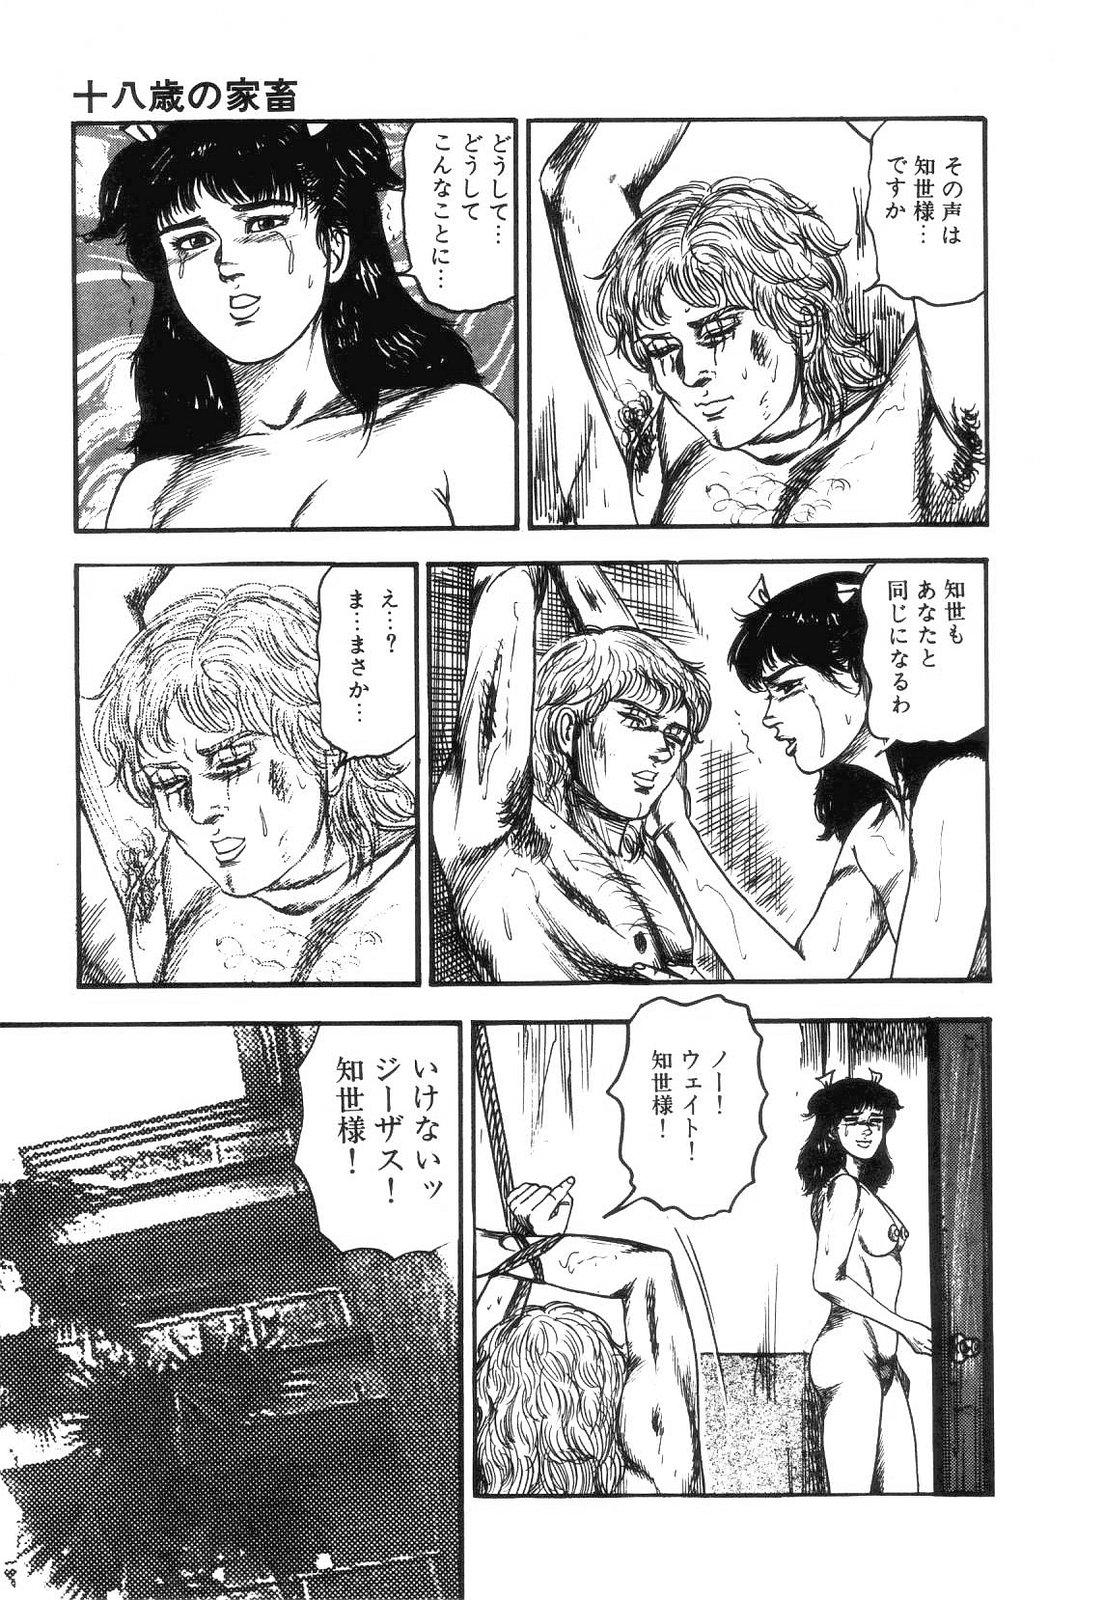 Shiro no Mokushiroku Vol. 4 - Bichiku Karen no Shou 158